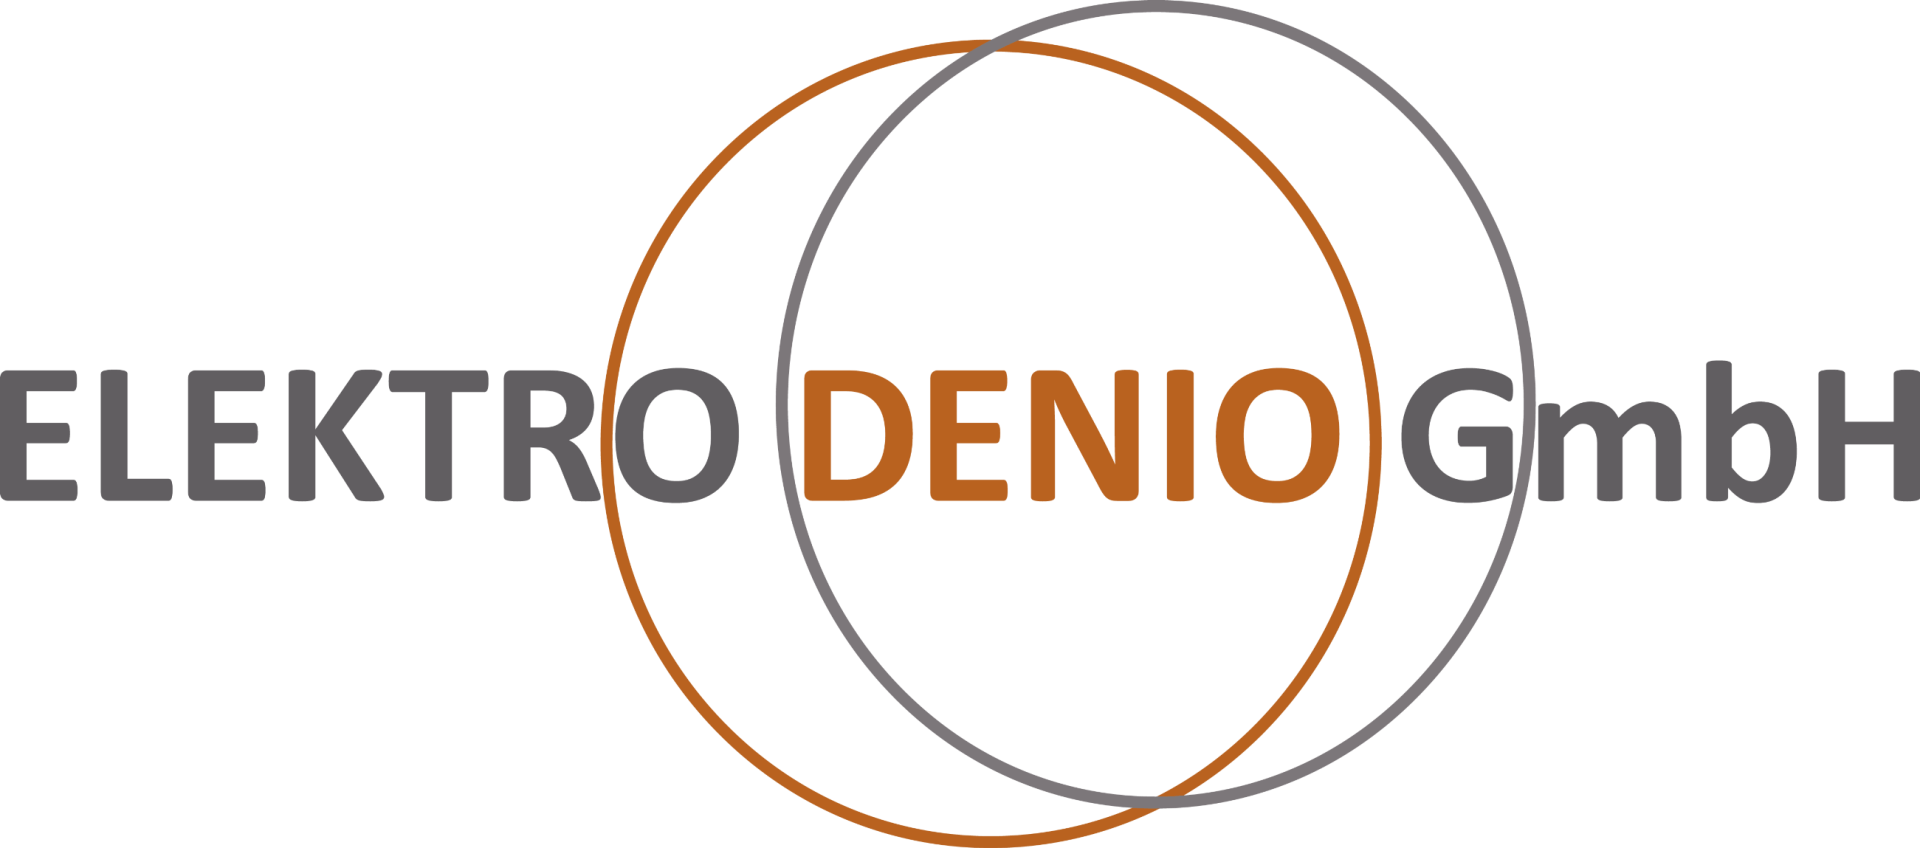 Elektro Denio GmbH